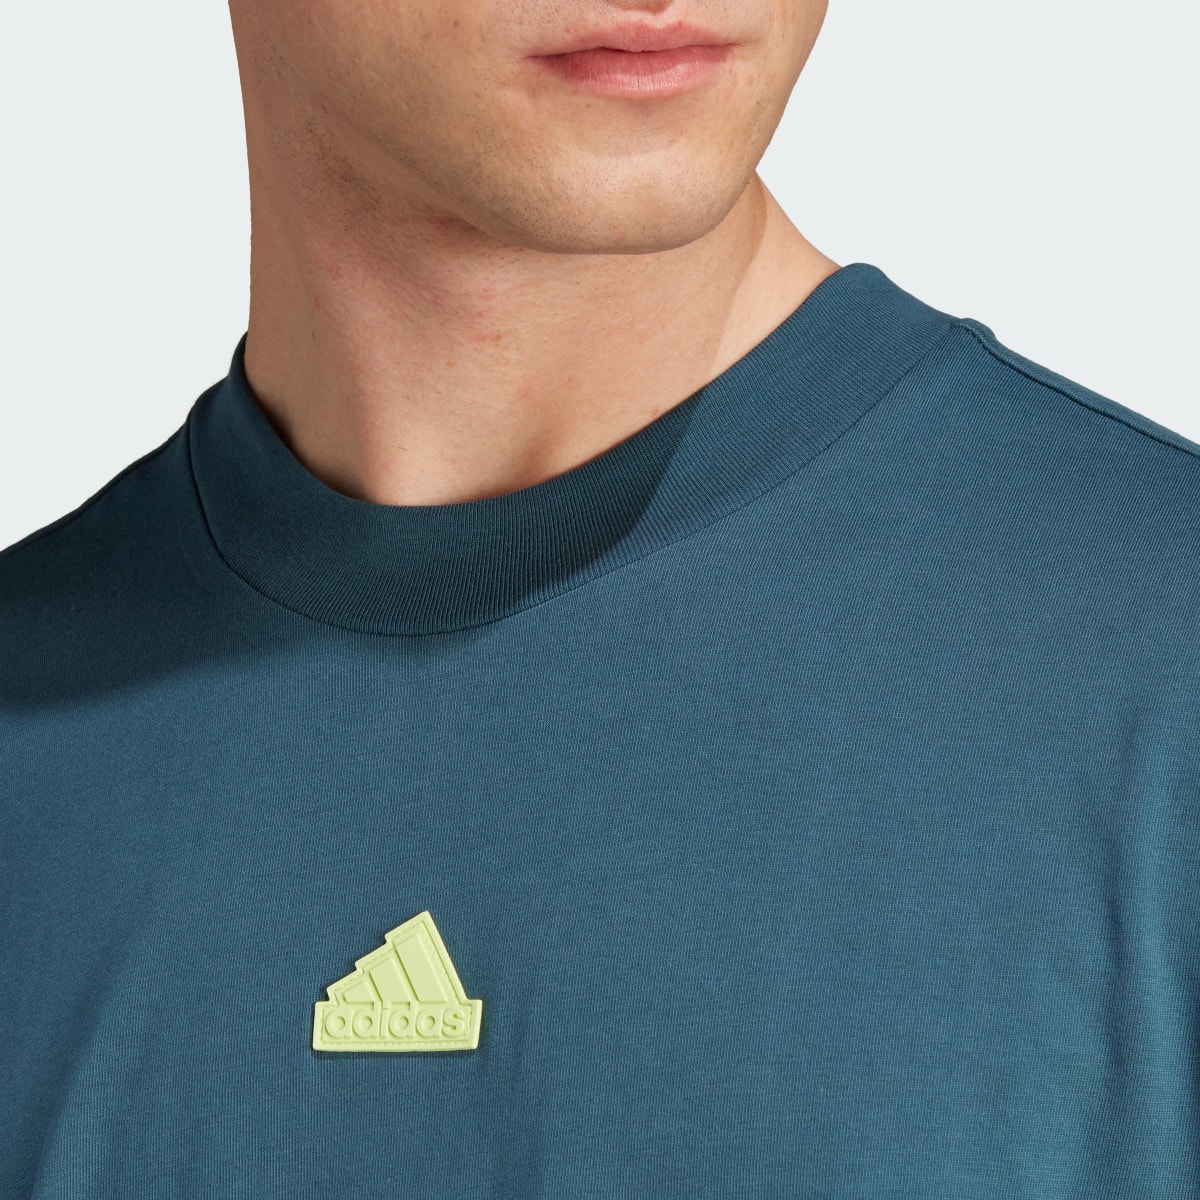 Adidas T-shirt 3-Stripes Future Icons. 6